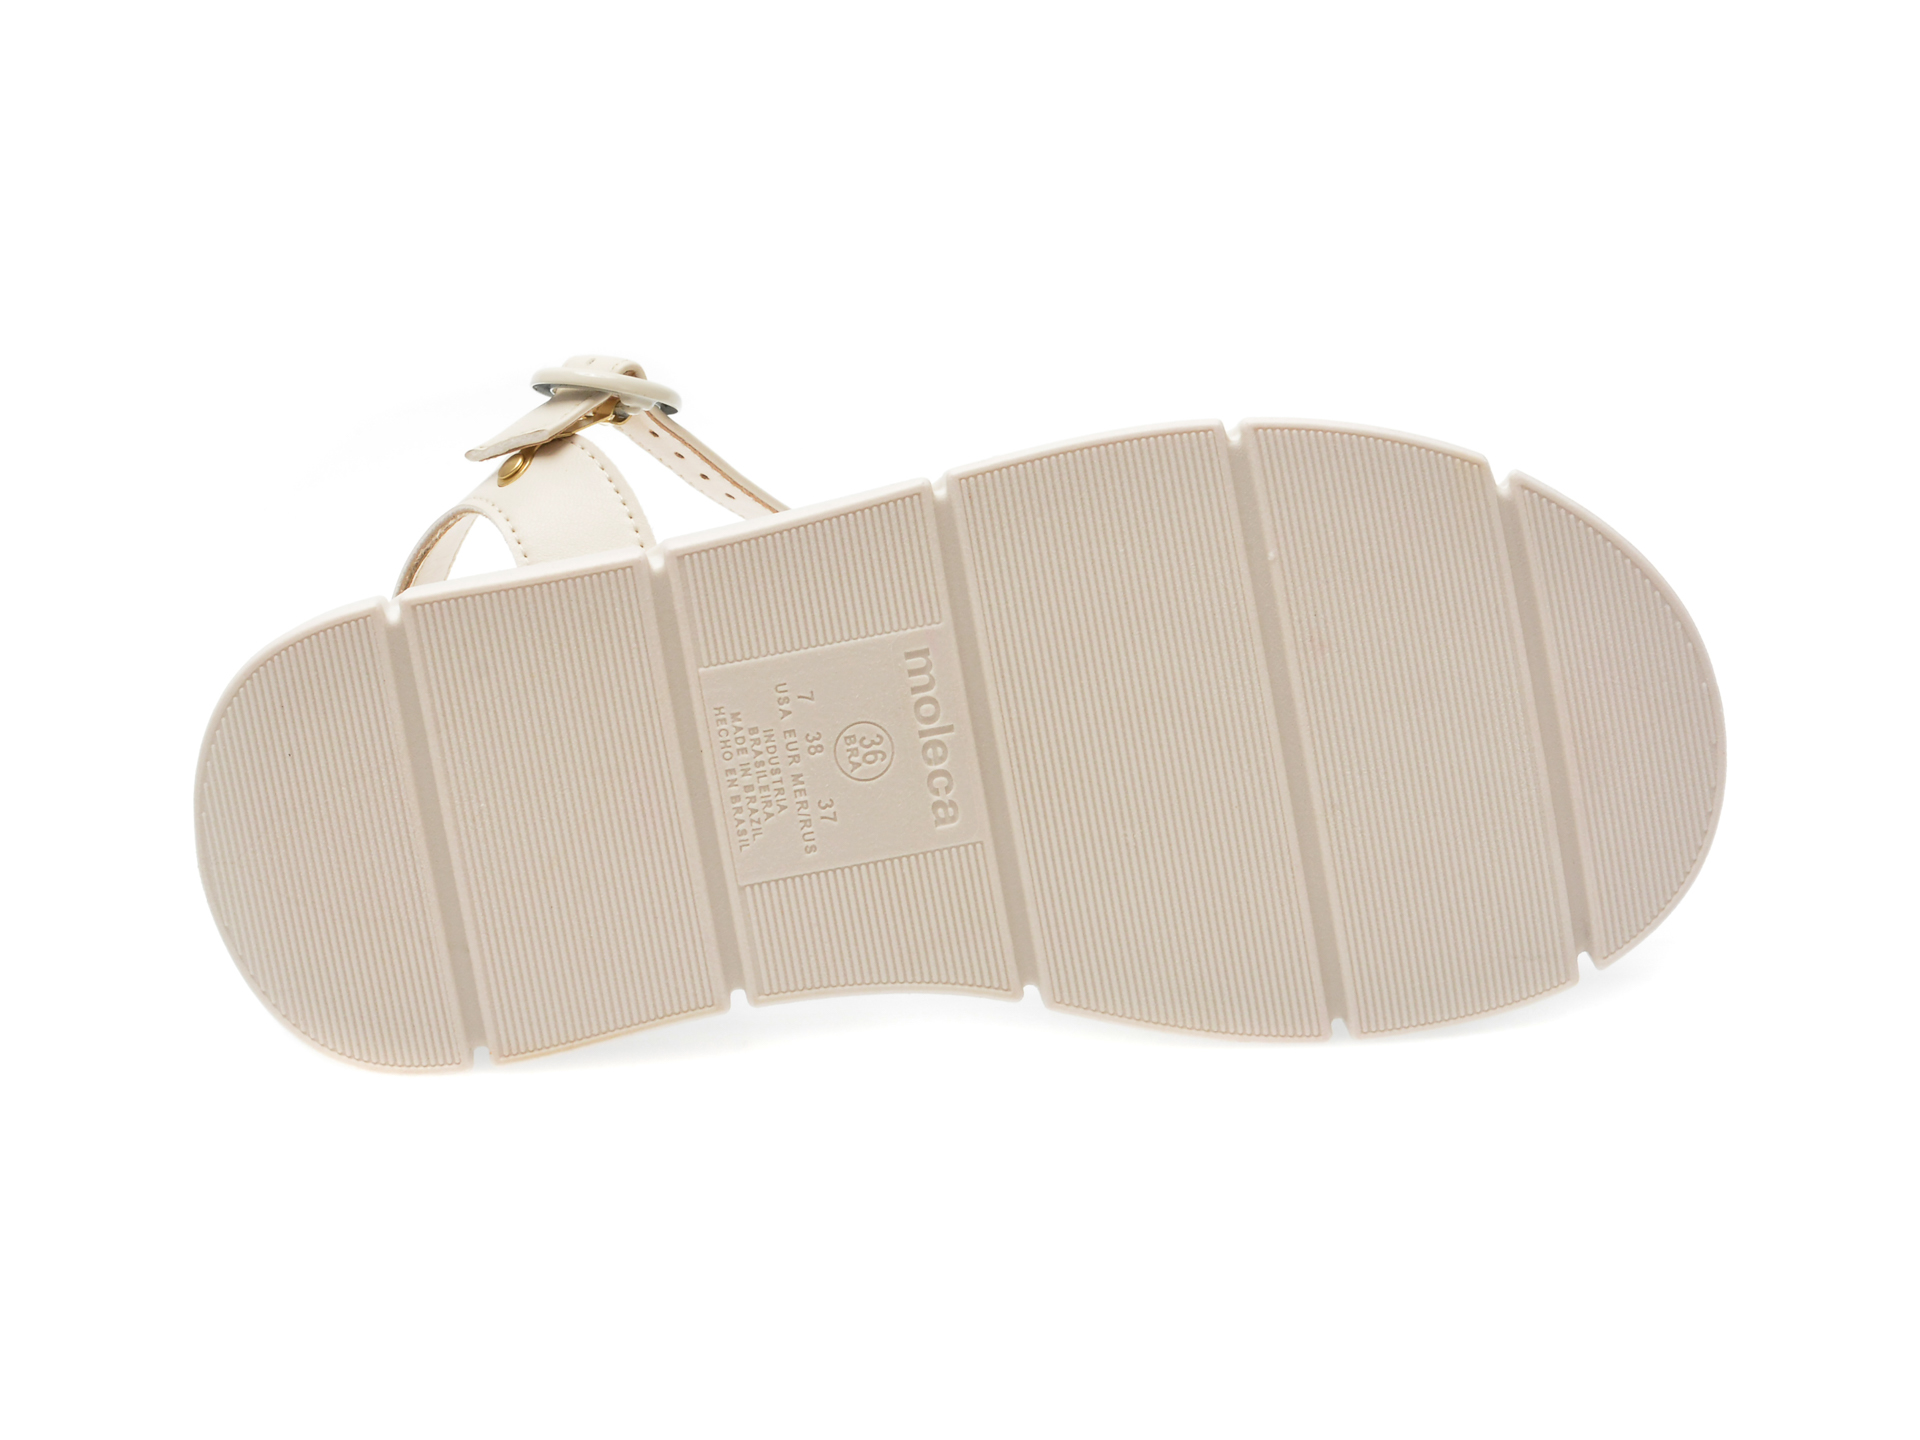 Sandale casual MOLECA albe, 5483102, din piele ecologica